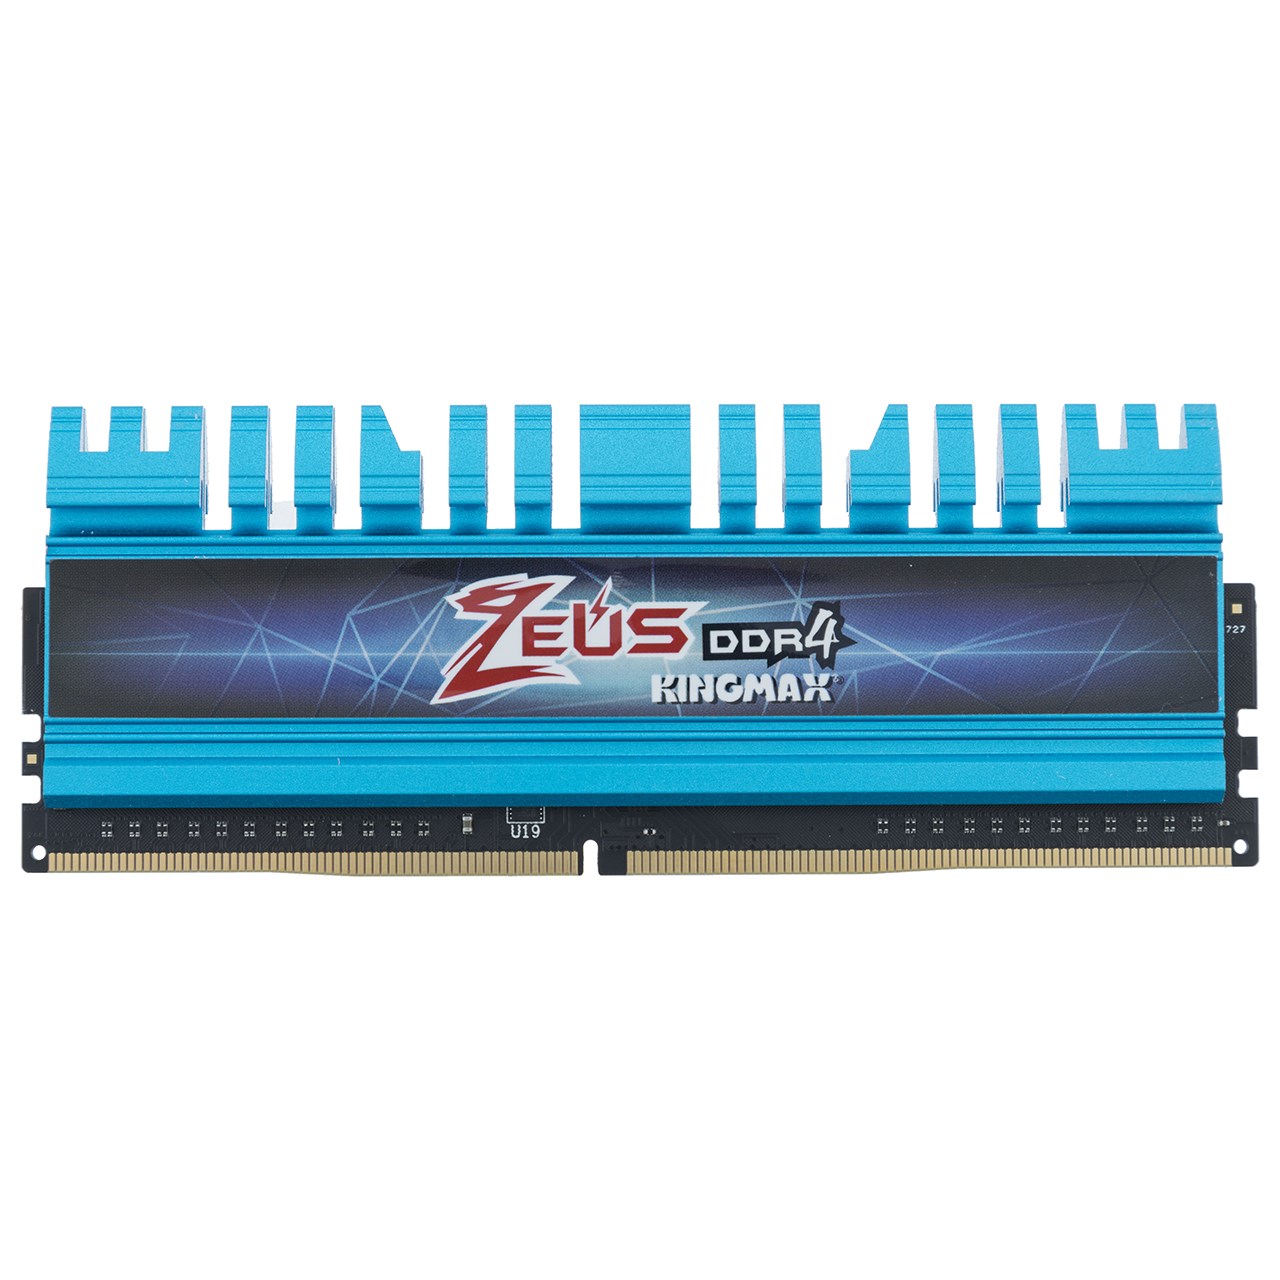 رم دسکتاپ DDR4 تک کاناله 3000 مگاهرتز CL16 کینگ مکس مدل Zeus ظرفیت 8 گیگابایت